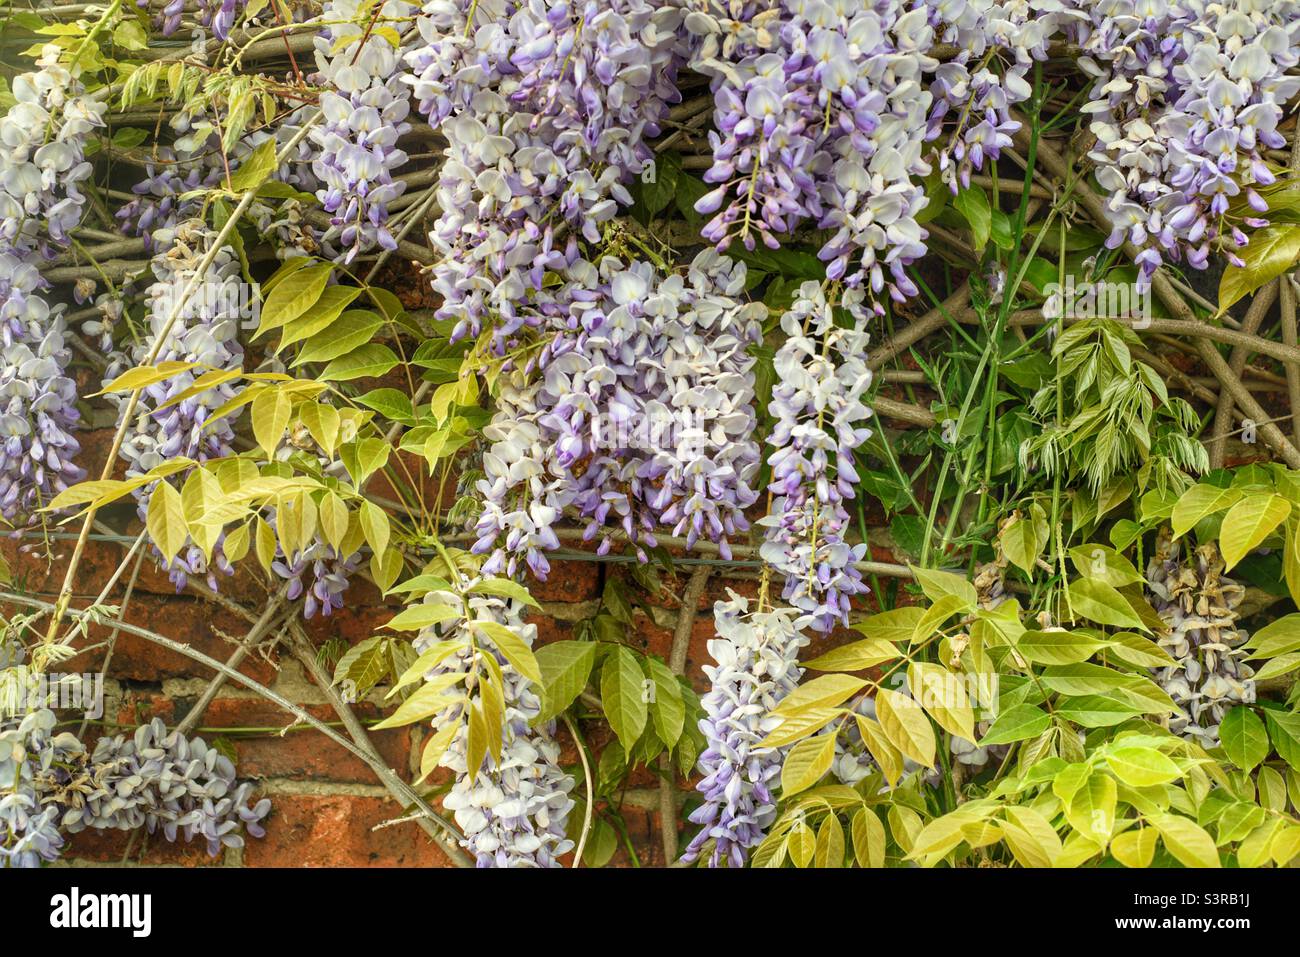 American wisteria Stock Photo